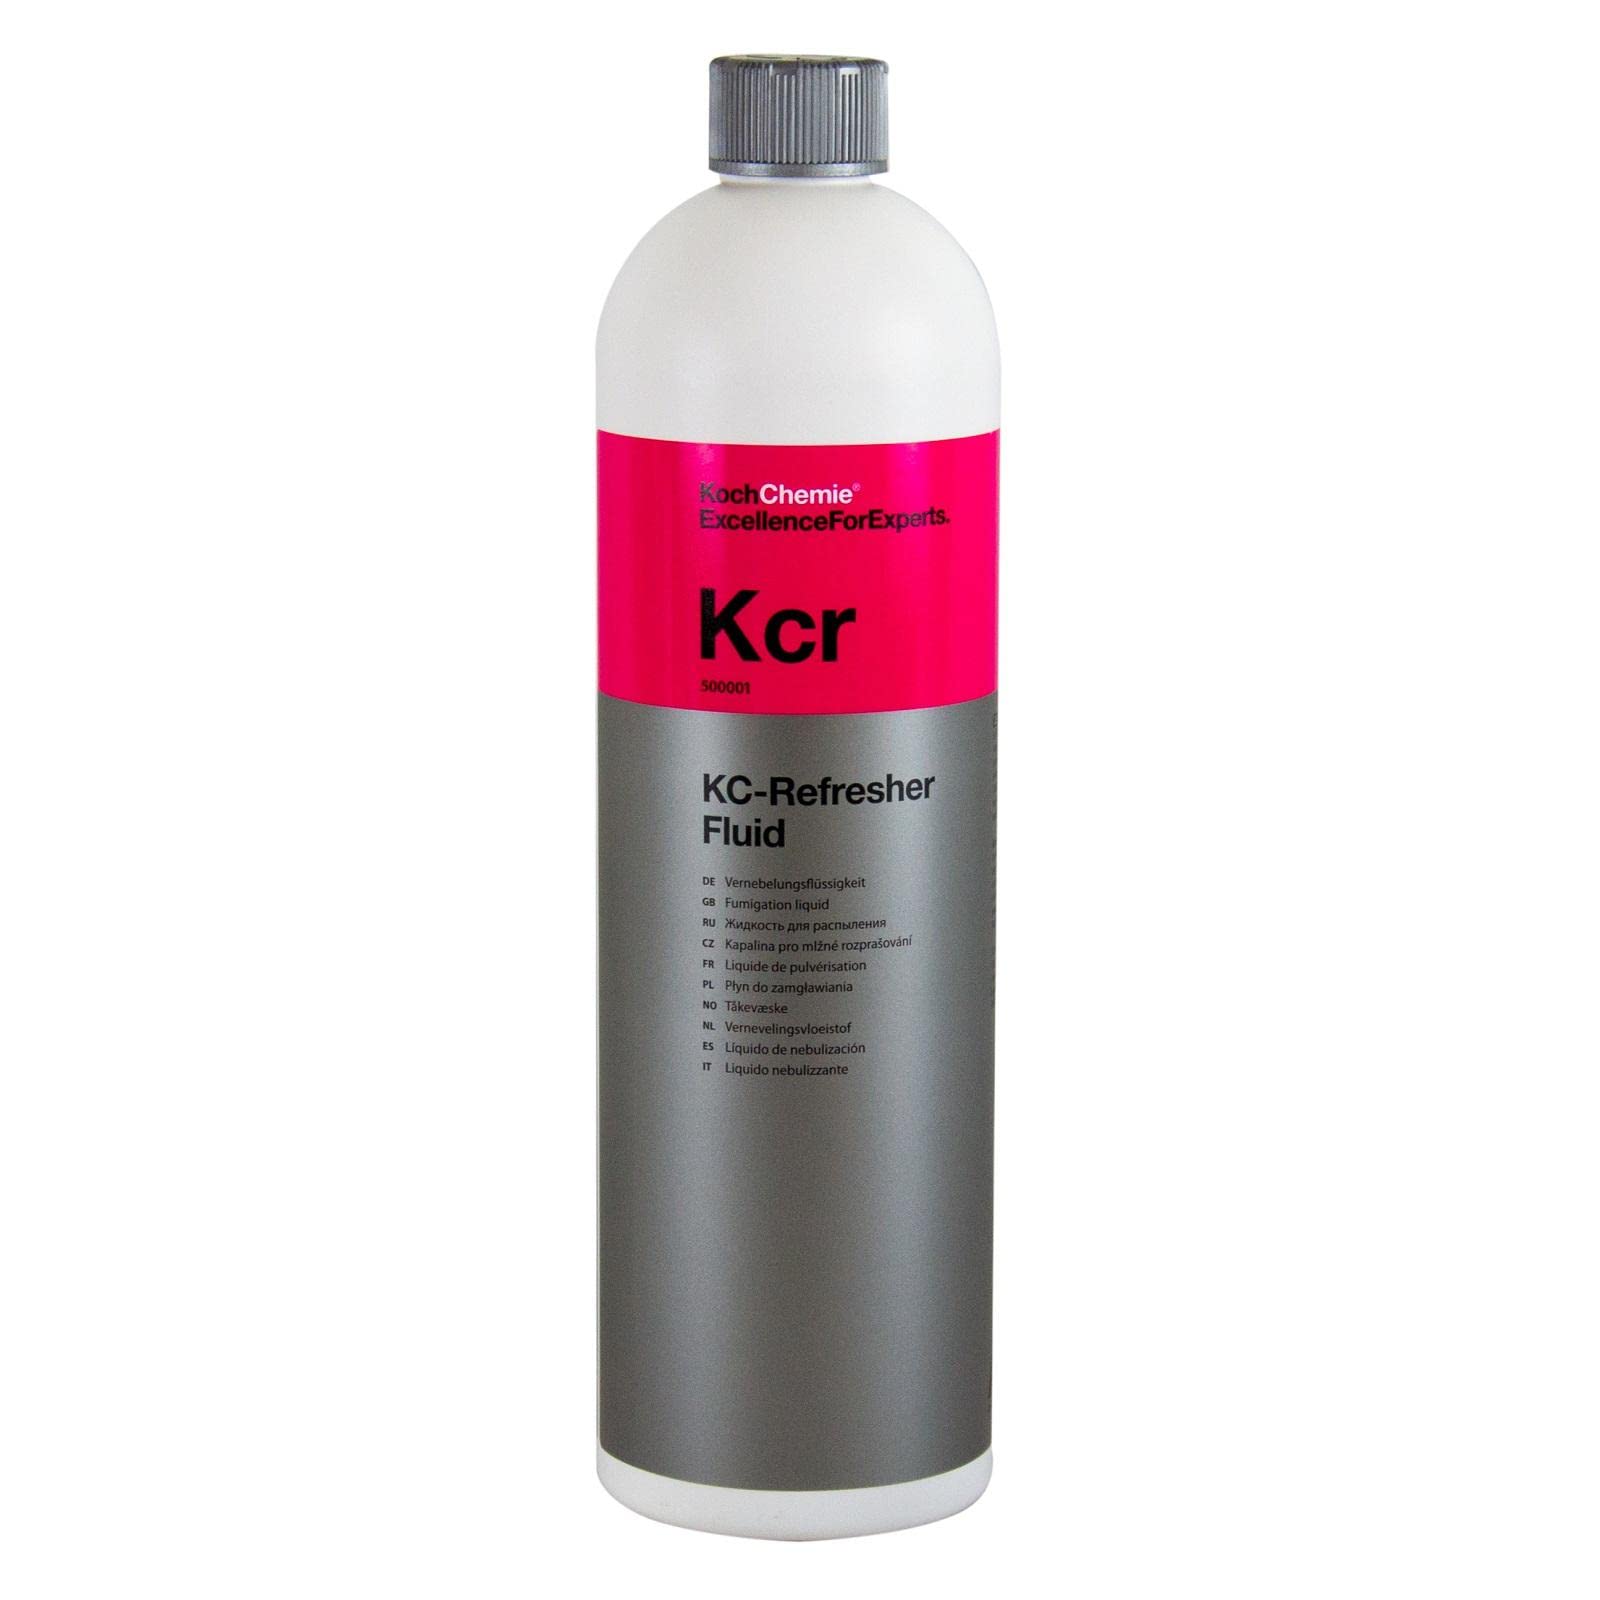 KOCH CHEMIE Kcr KC-Refresher Fluid Vernebelungsflüssigkeit Geruchskiller 1 L von Koch Chemie